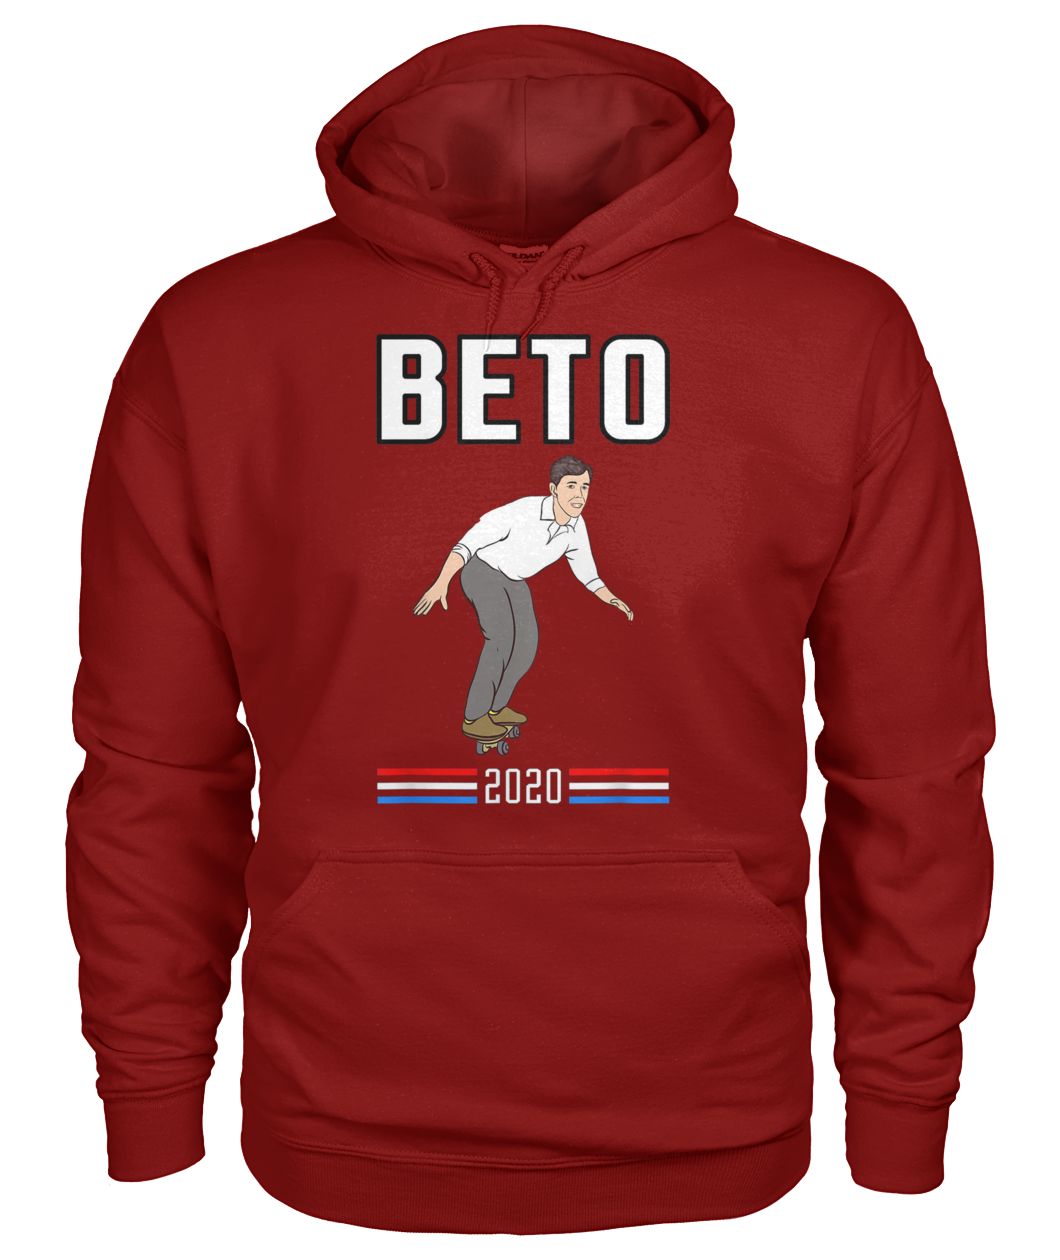 Beto o'rourke for president 2020 skateboarding thrasher gildan hoodie